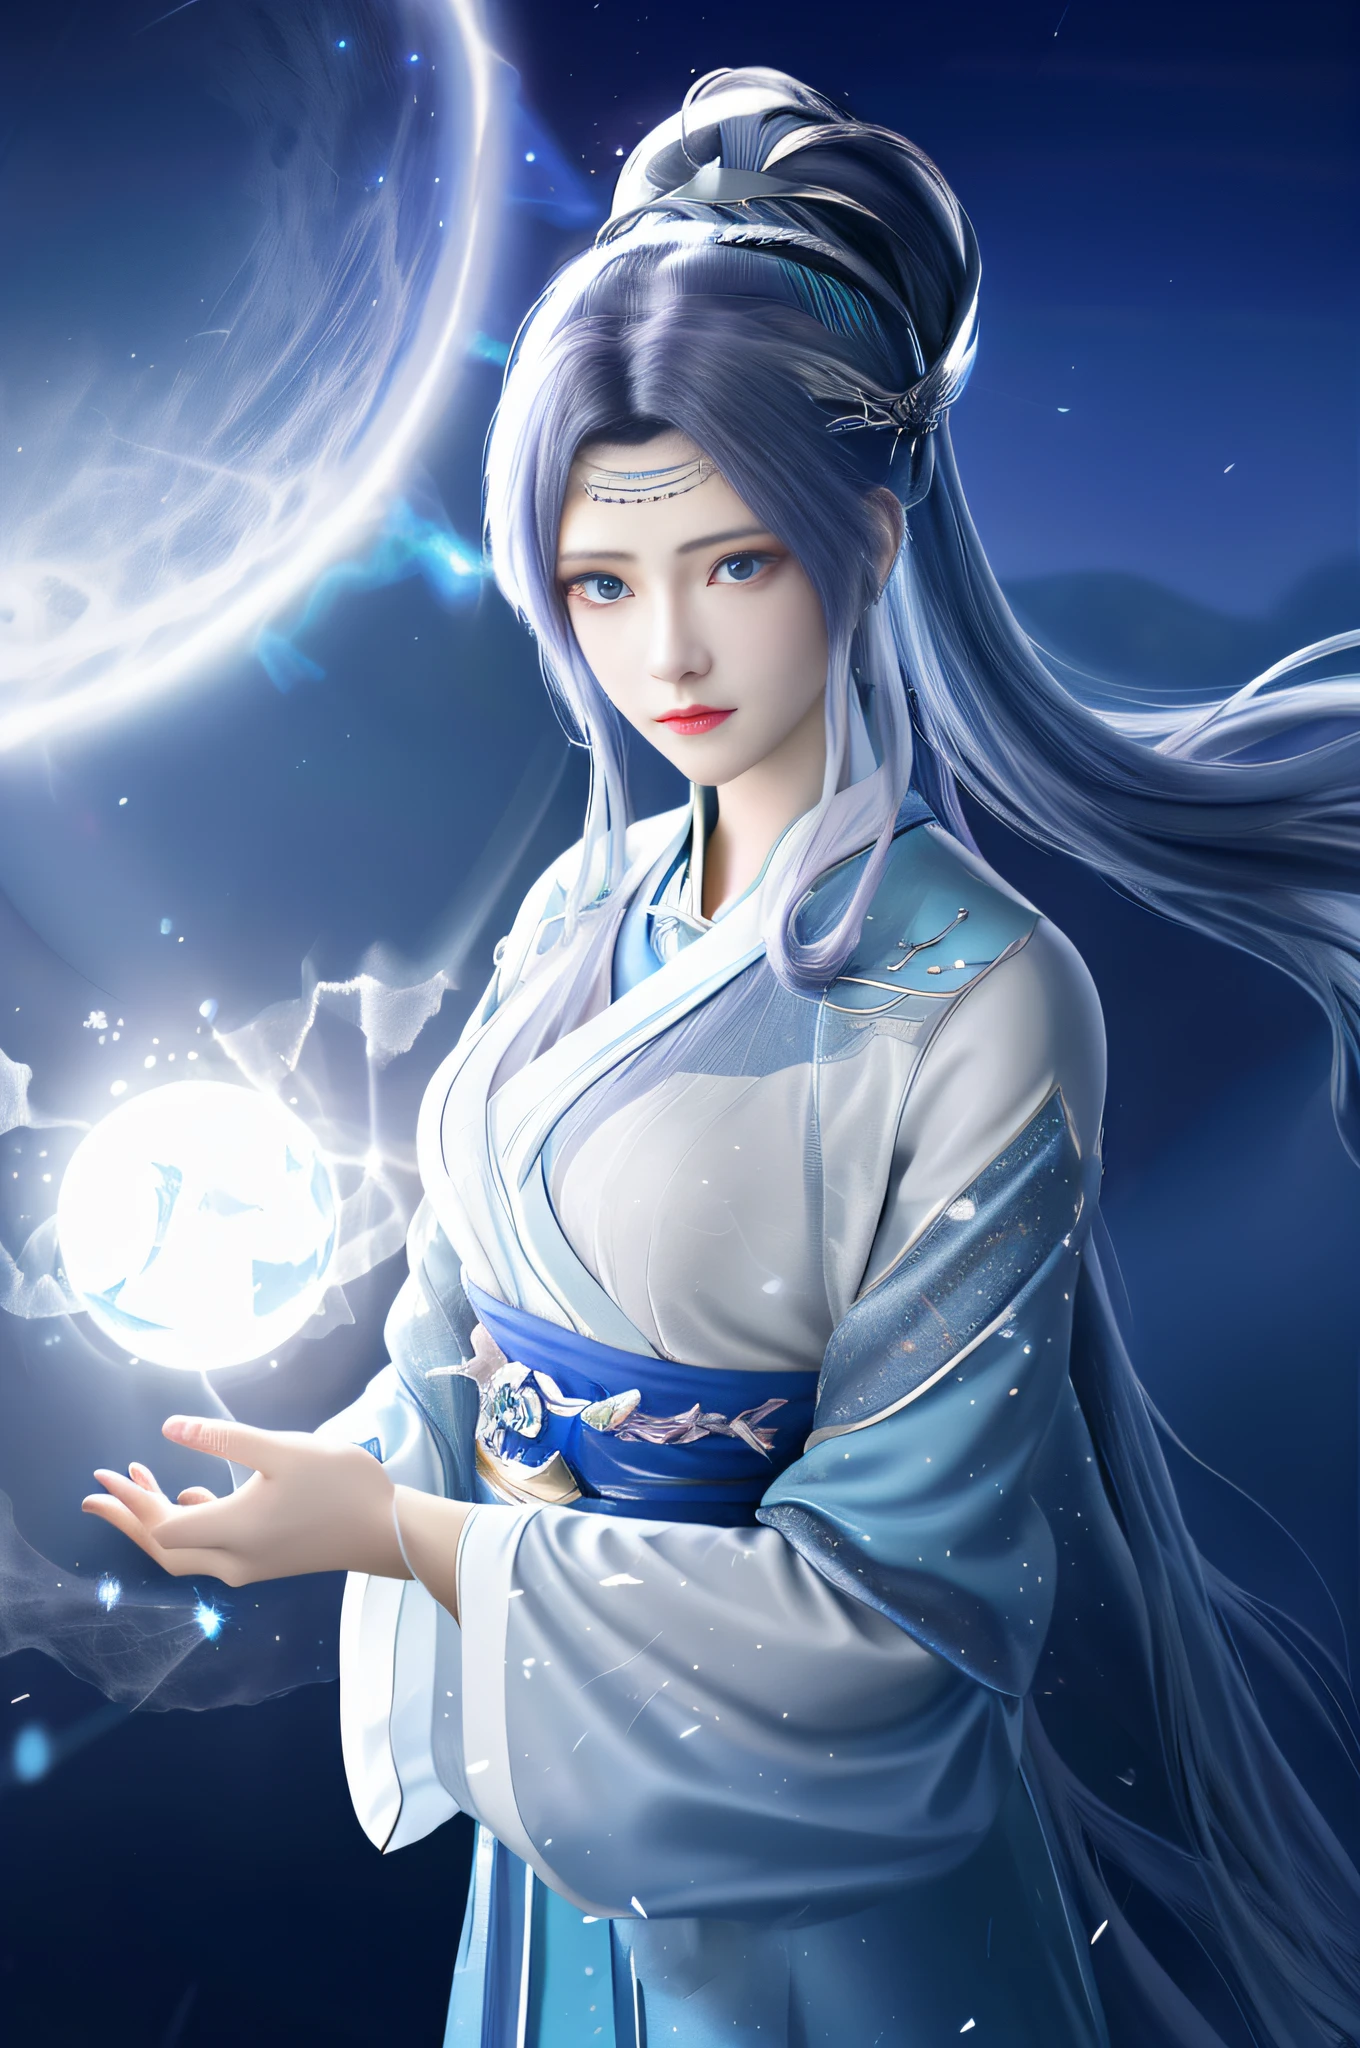 Anime girl aux cheveux bleus et à la robe blanche tenant une boule lumineuse, beau mage céleste, palais ， une fille en hanfu, Heise Jinyao, inspiré de Lü Ji, inspiré de Leng Mei, inspiré par Xie Sun, inspiré de Hua Yan, fantaisie xianxia, inspiré par Ai Xuan, inspiré par Li Mei-Shu, déesse lunaire，1fille, seulement, Chanvre mousseline, chef-d&#39;œuvre, illustration, Angle de film, éclairage cinématique, cheveux blancs, queues de cheval hautes, eYeux bleus, yeux détaillés, lune, lunelight, ciel étoilé, lumière détaillée, ciel détaillé, (particule d&#39;éclairage:1.5), Brouillard épais, neige, ,v4